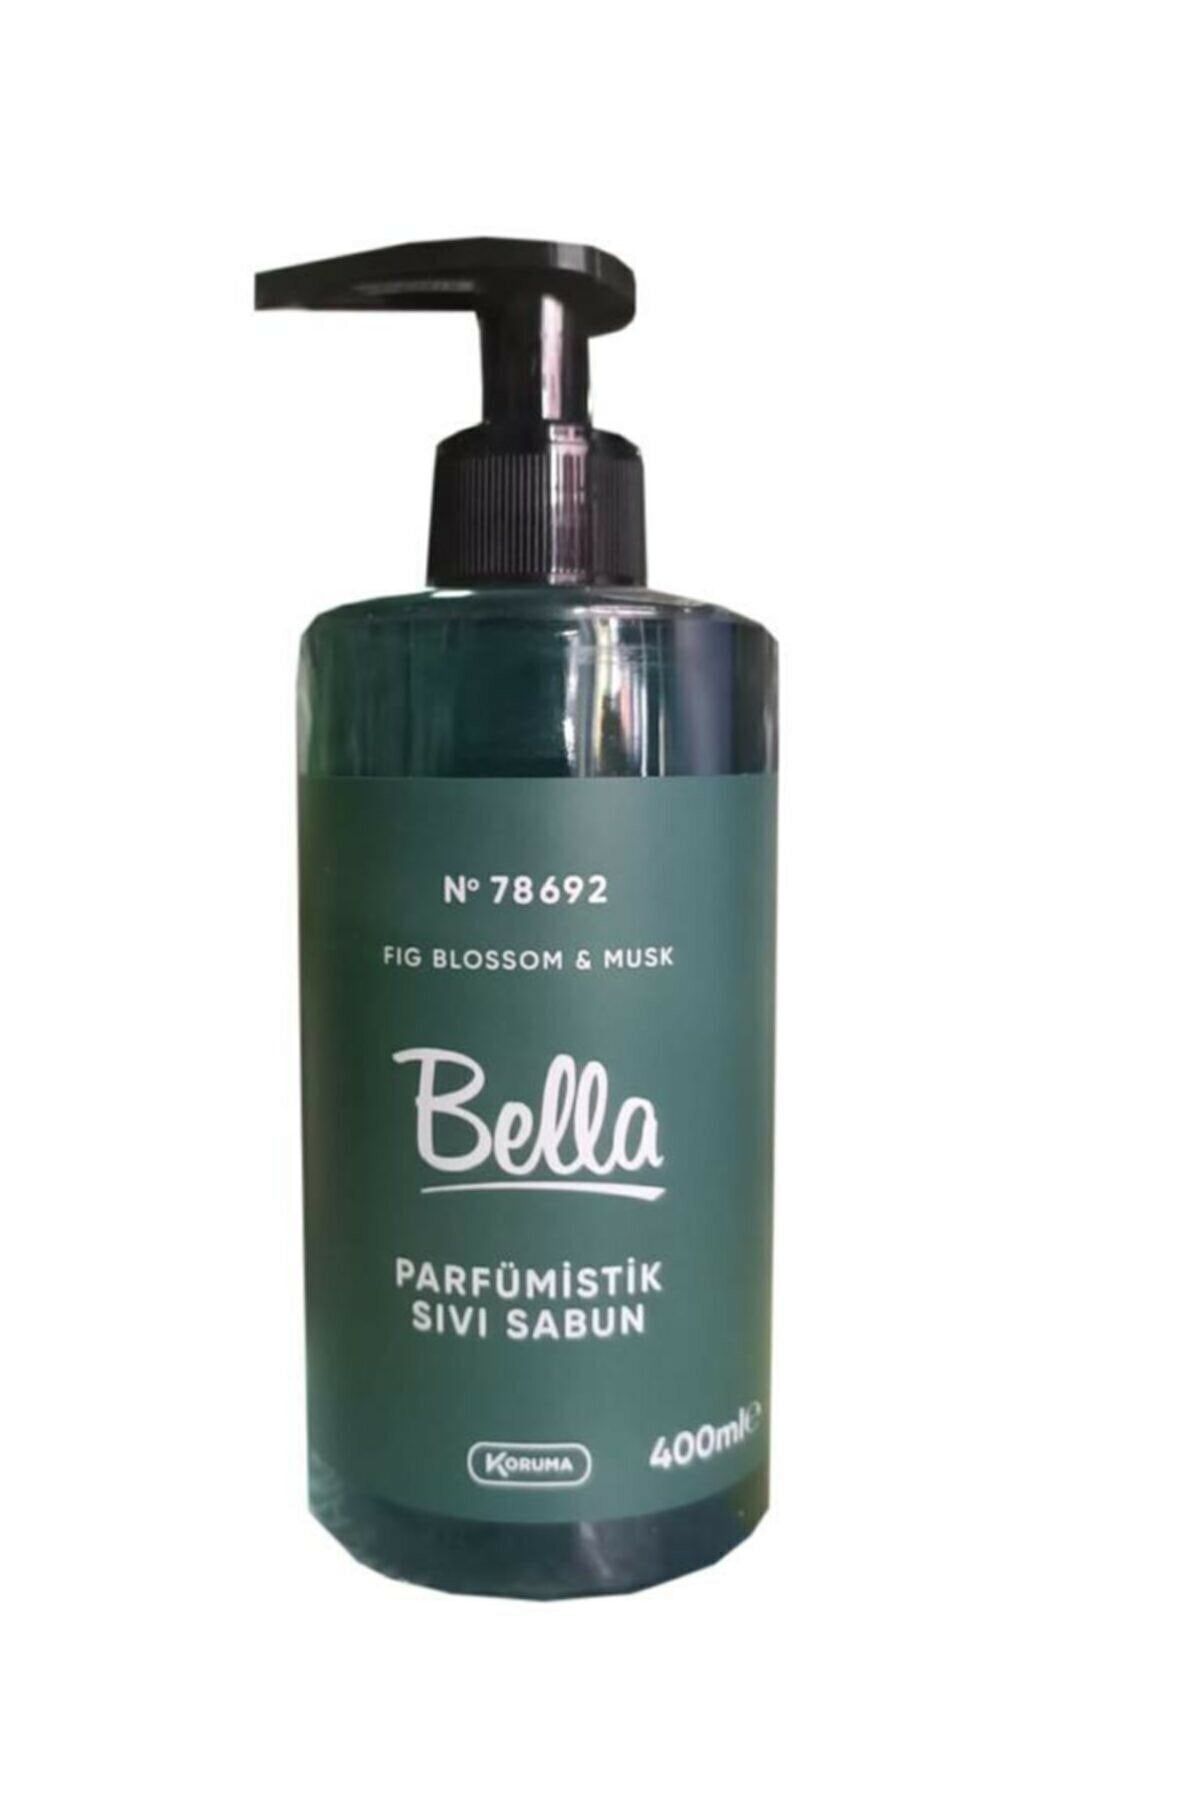 Bella Fig Blossom & Musk Parfümistik Sıvı Sabun 400 ml